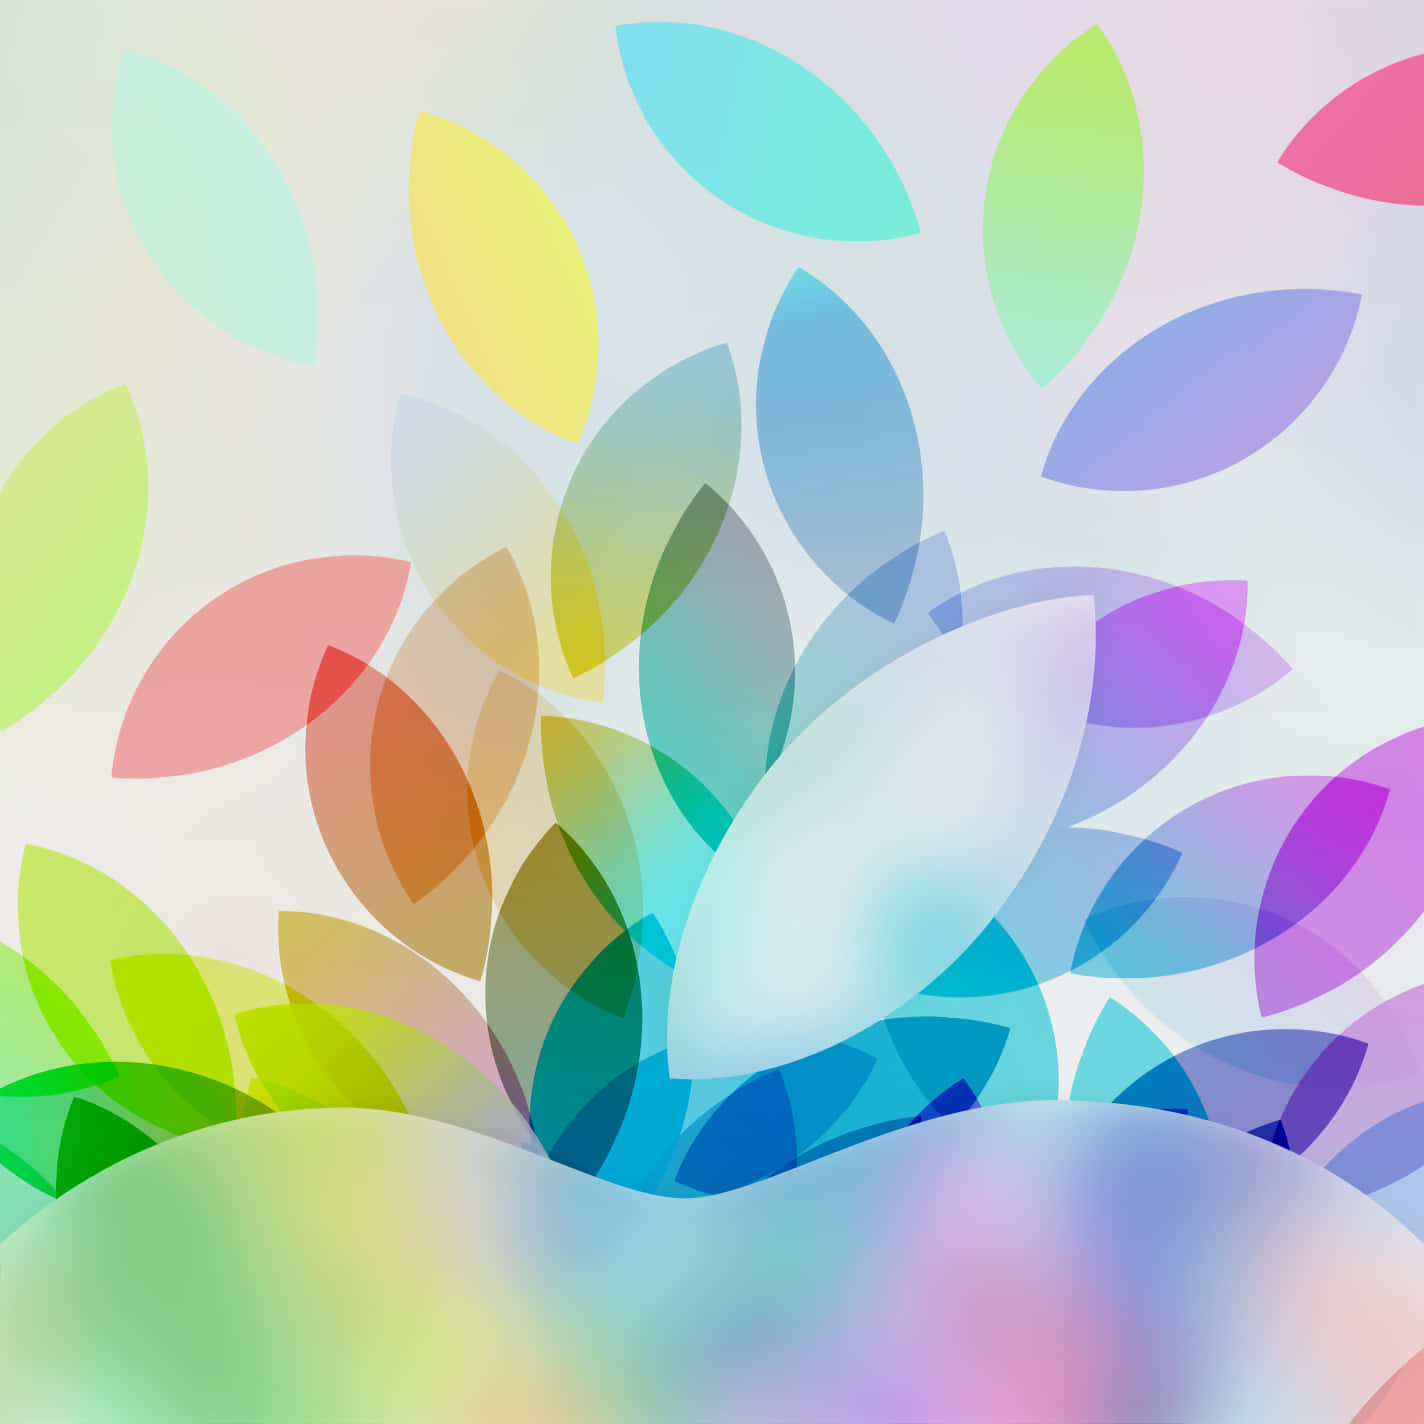 Logode Apple Colorido Lindo Ipad Para Chicas. Fondo de pantalla